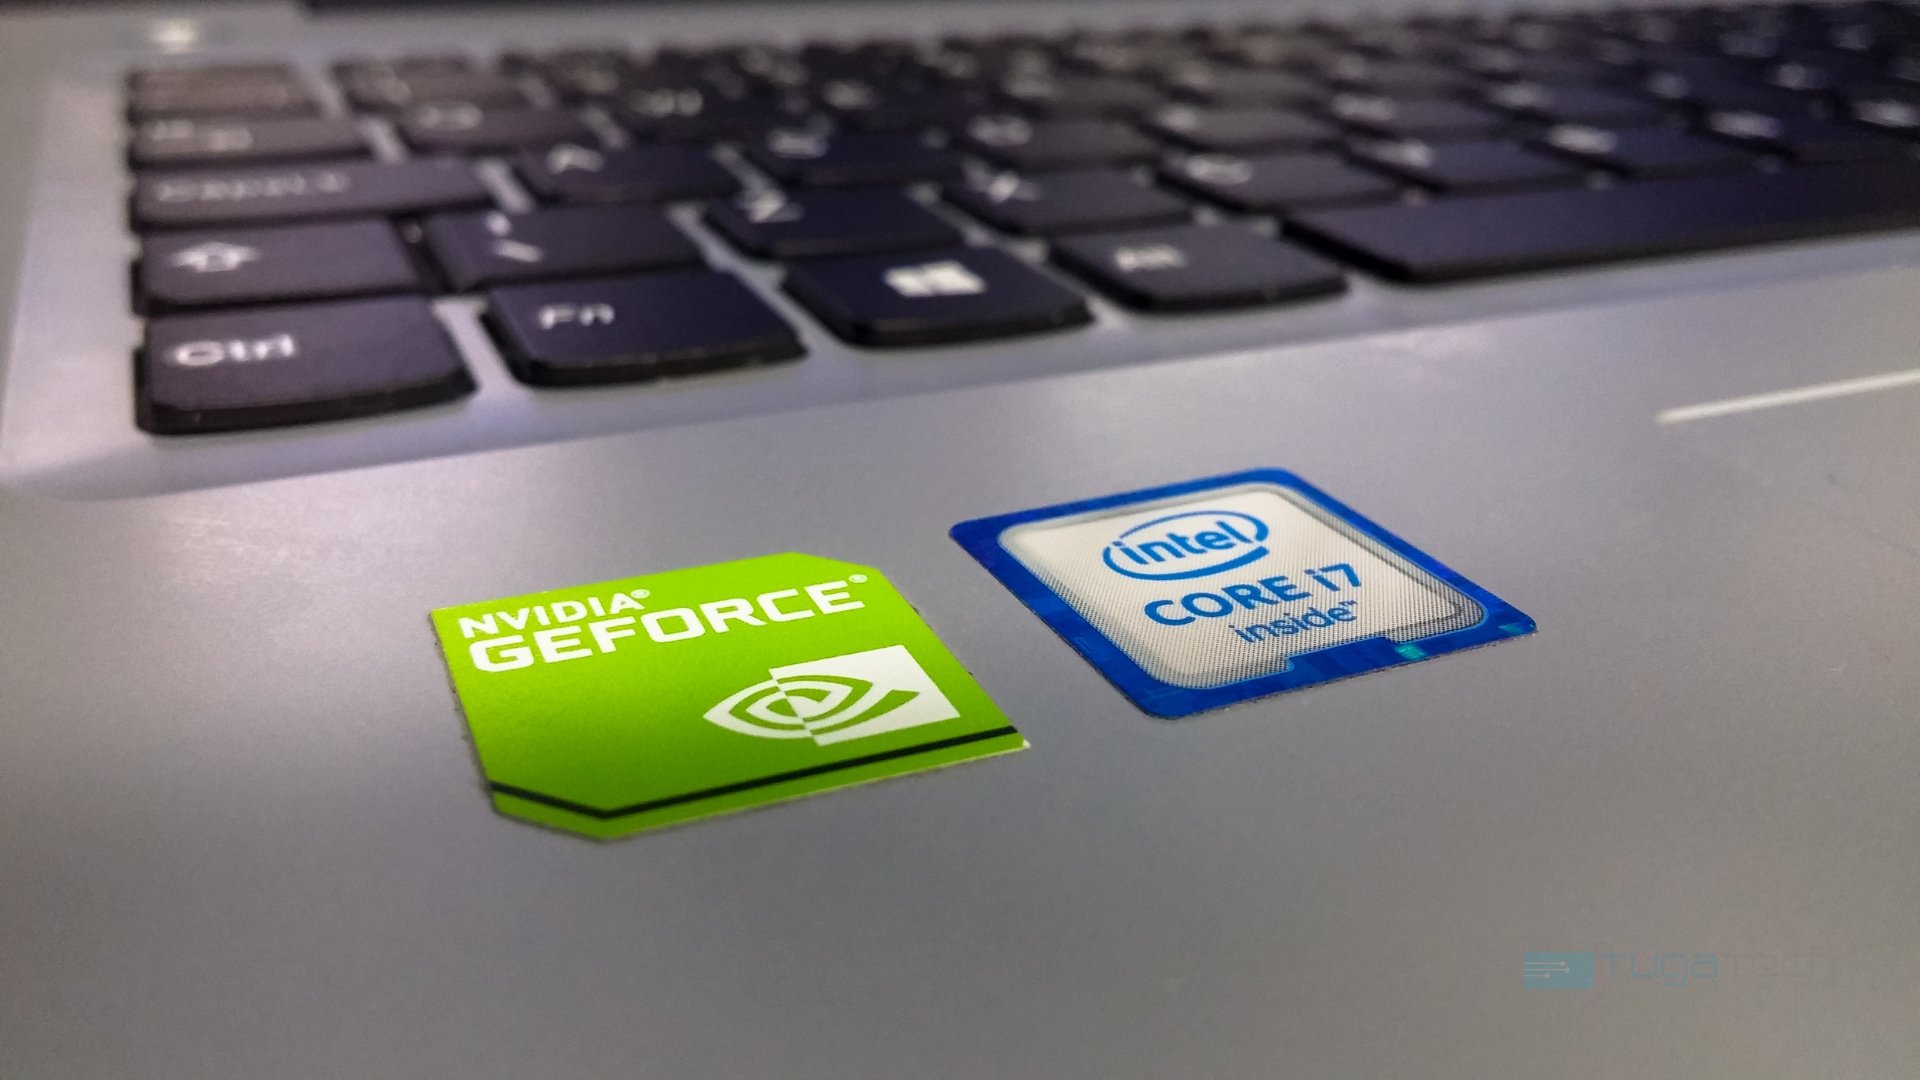 Nvidia portátil com logo da empresa